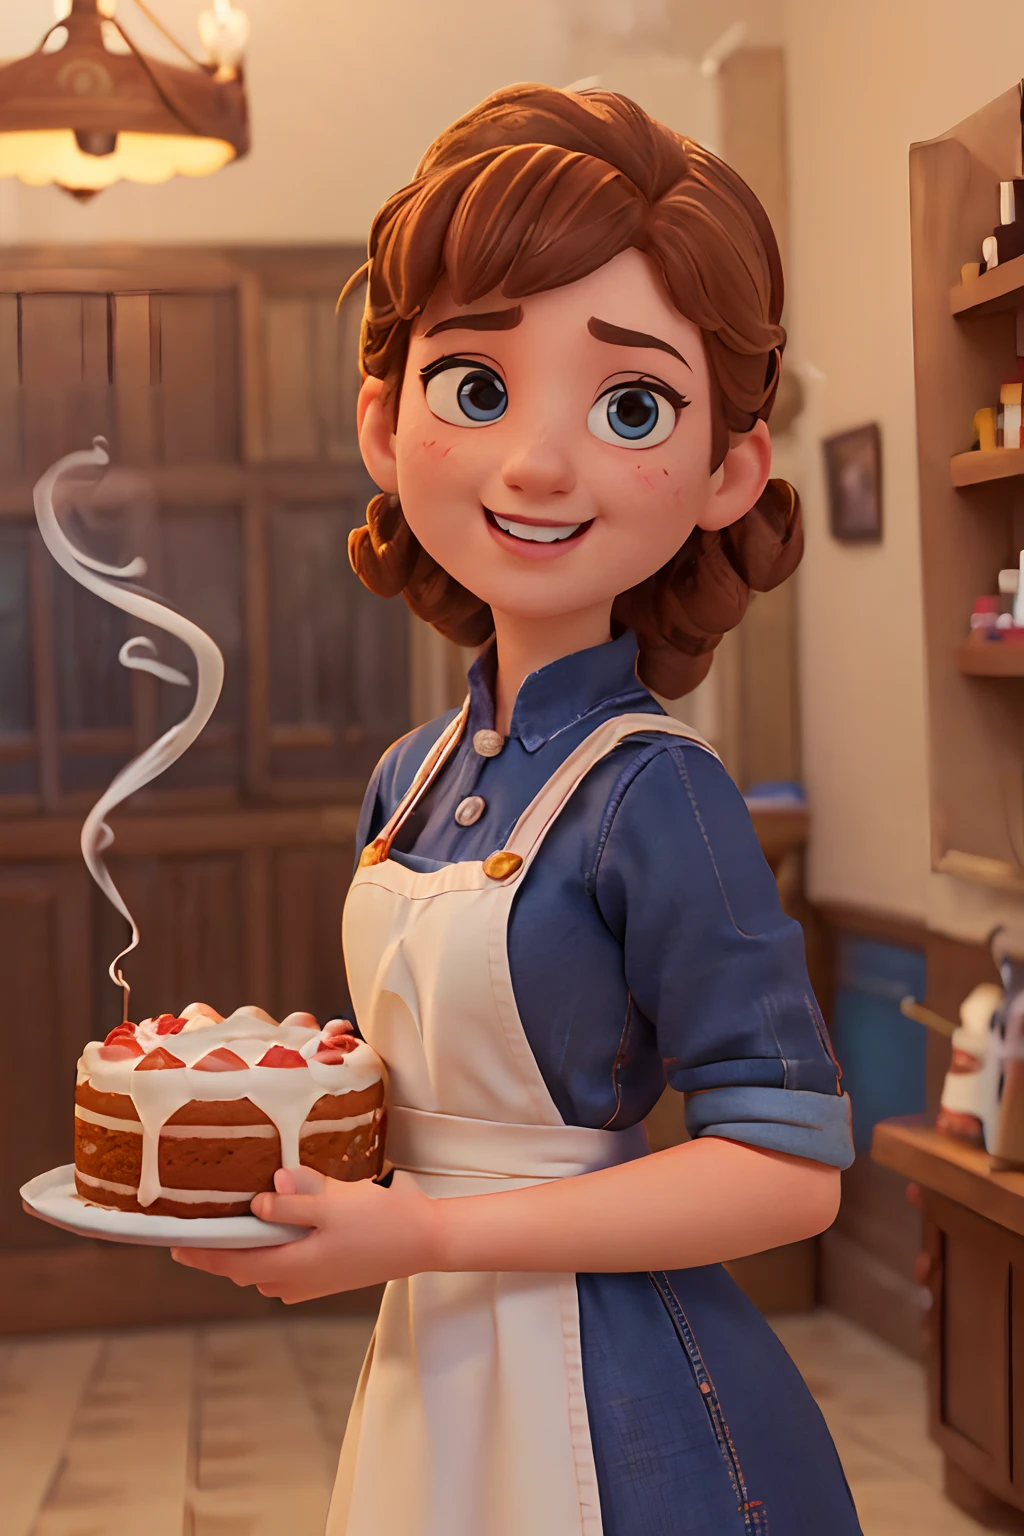 (皮克斯風格的海報，從正面看到一個穿著白色廚師制服的可愛女孩, 微笑著展示裝飾好的中型蛋糕. 俏皮的臉, (棕色捲髮, 年輕嬌嫩的肌膚, 小下巴, 短下巴. 笑的表情, 夸张表达 , （完美正確的手型） ，（煙氣: 1.37） 糖果店內部的電影背景, 高品質照片, 3D工作室照片, (大量煙霧: 1.2), 特寫攝影, 臉部特徵痕跡清晰, 角色概念艺术, 誇張,